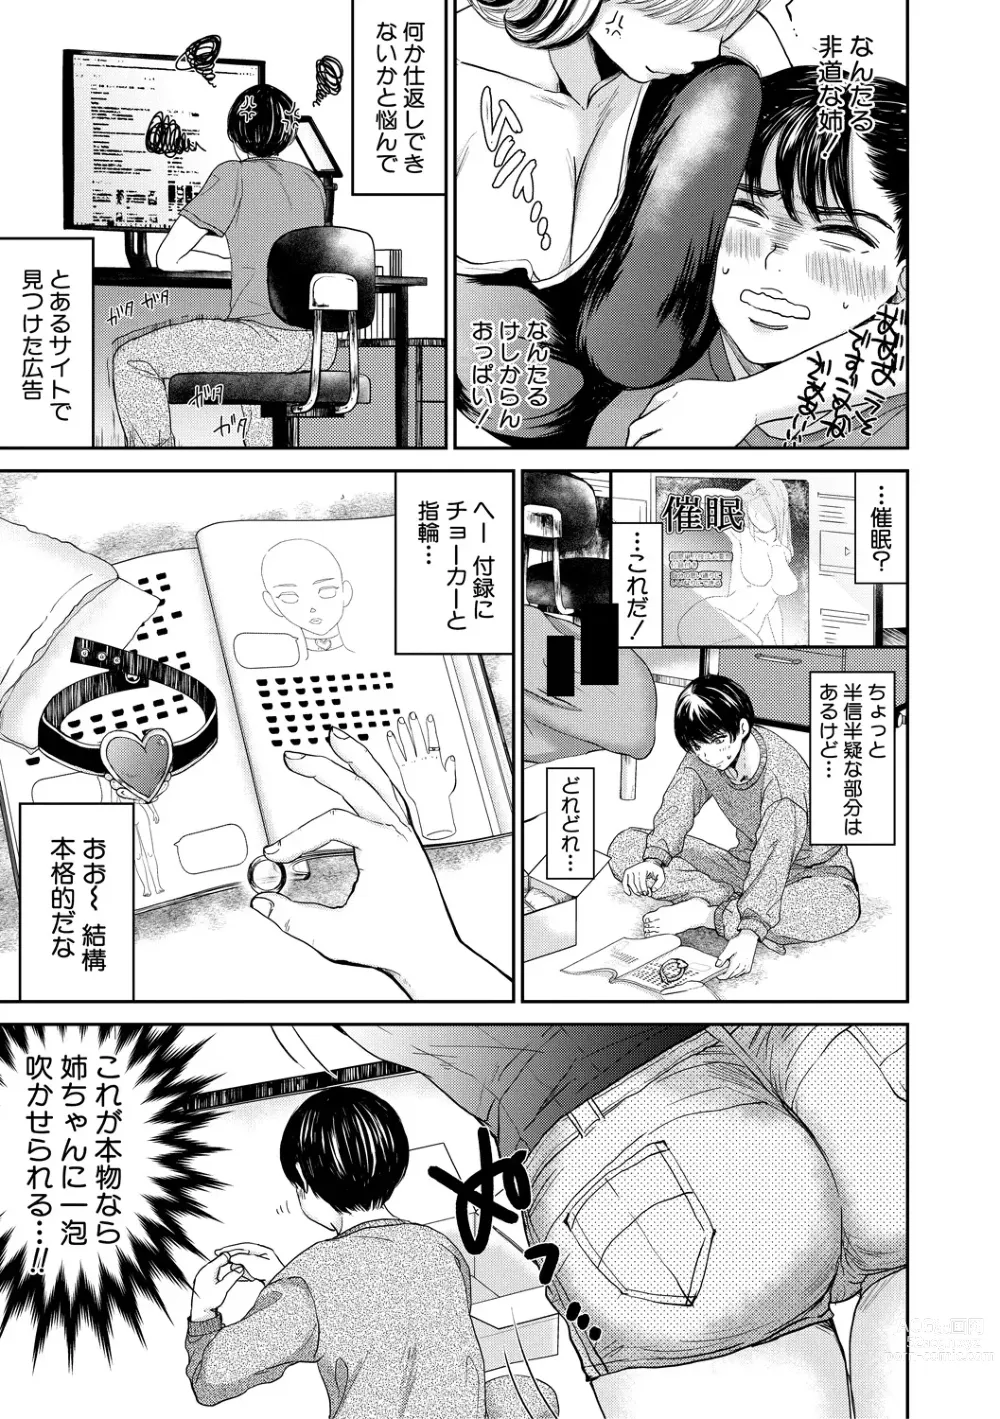 Page 5 of manga Shiborikiri Ane Body